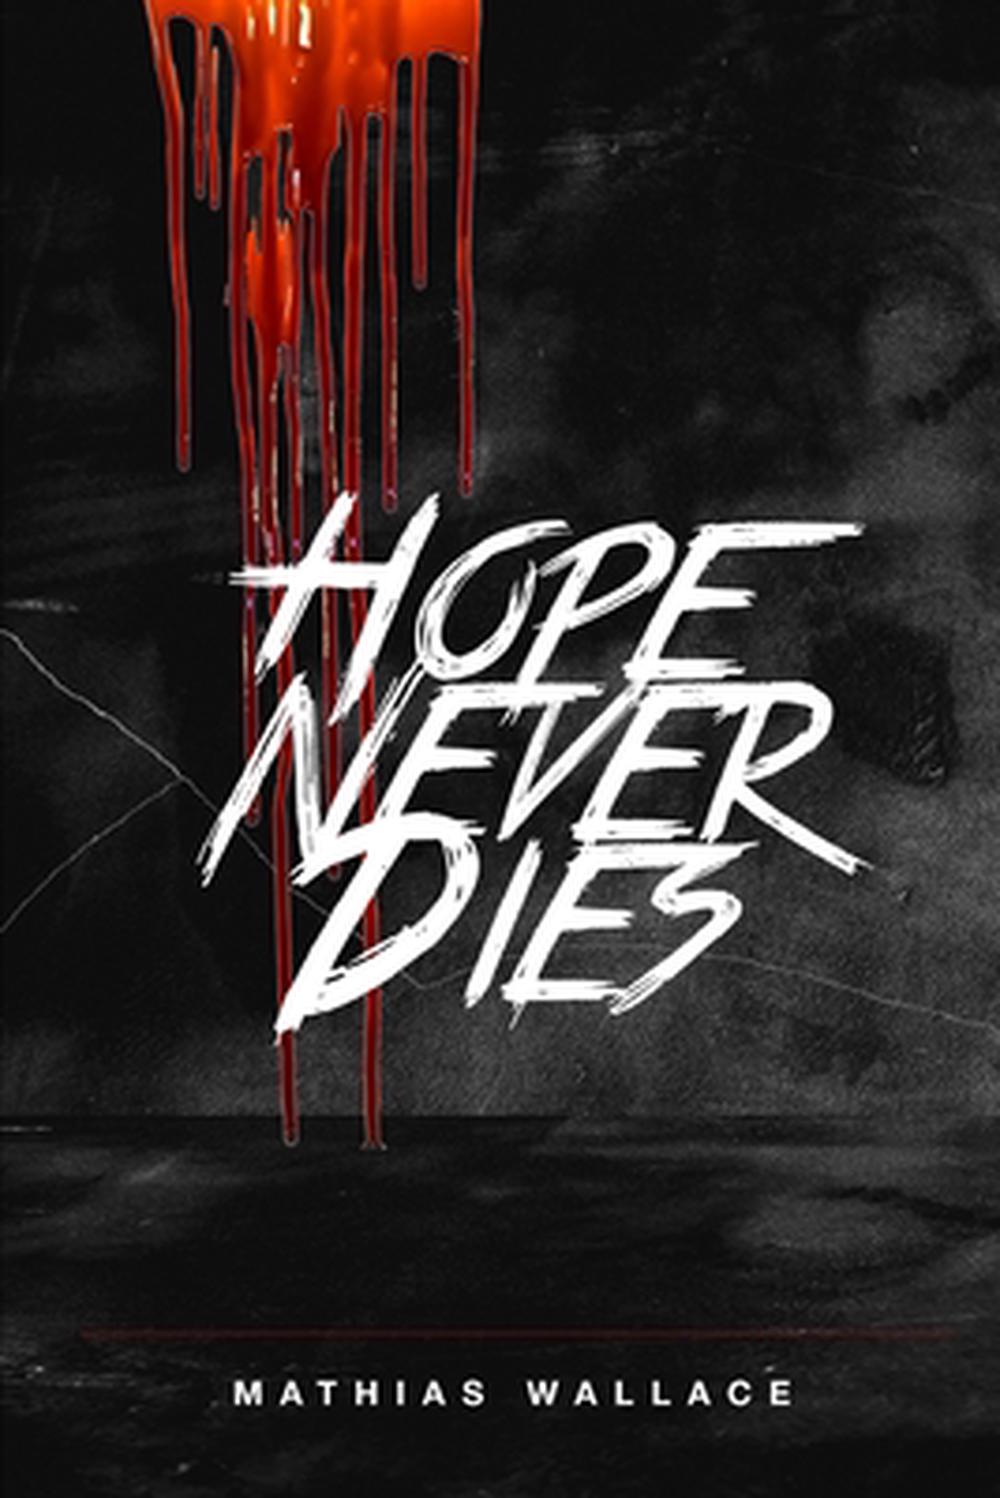 hope never dies novel